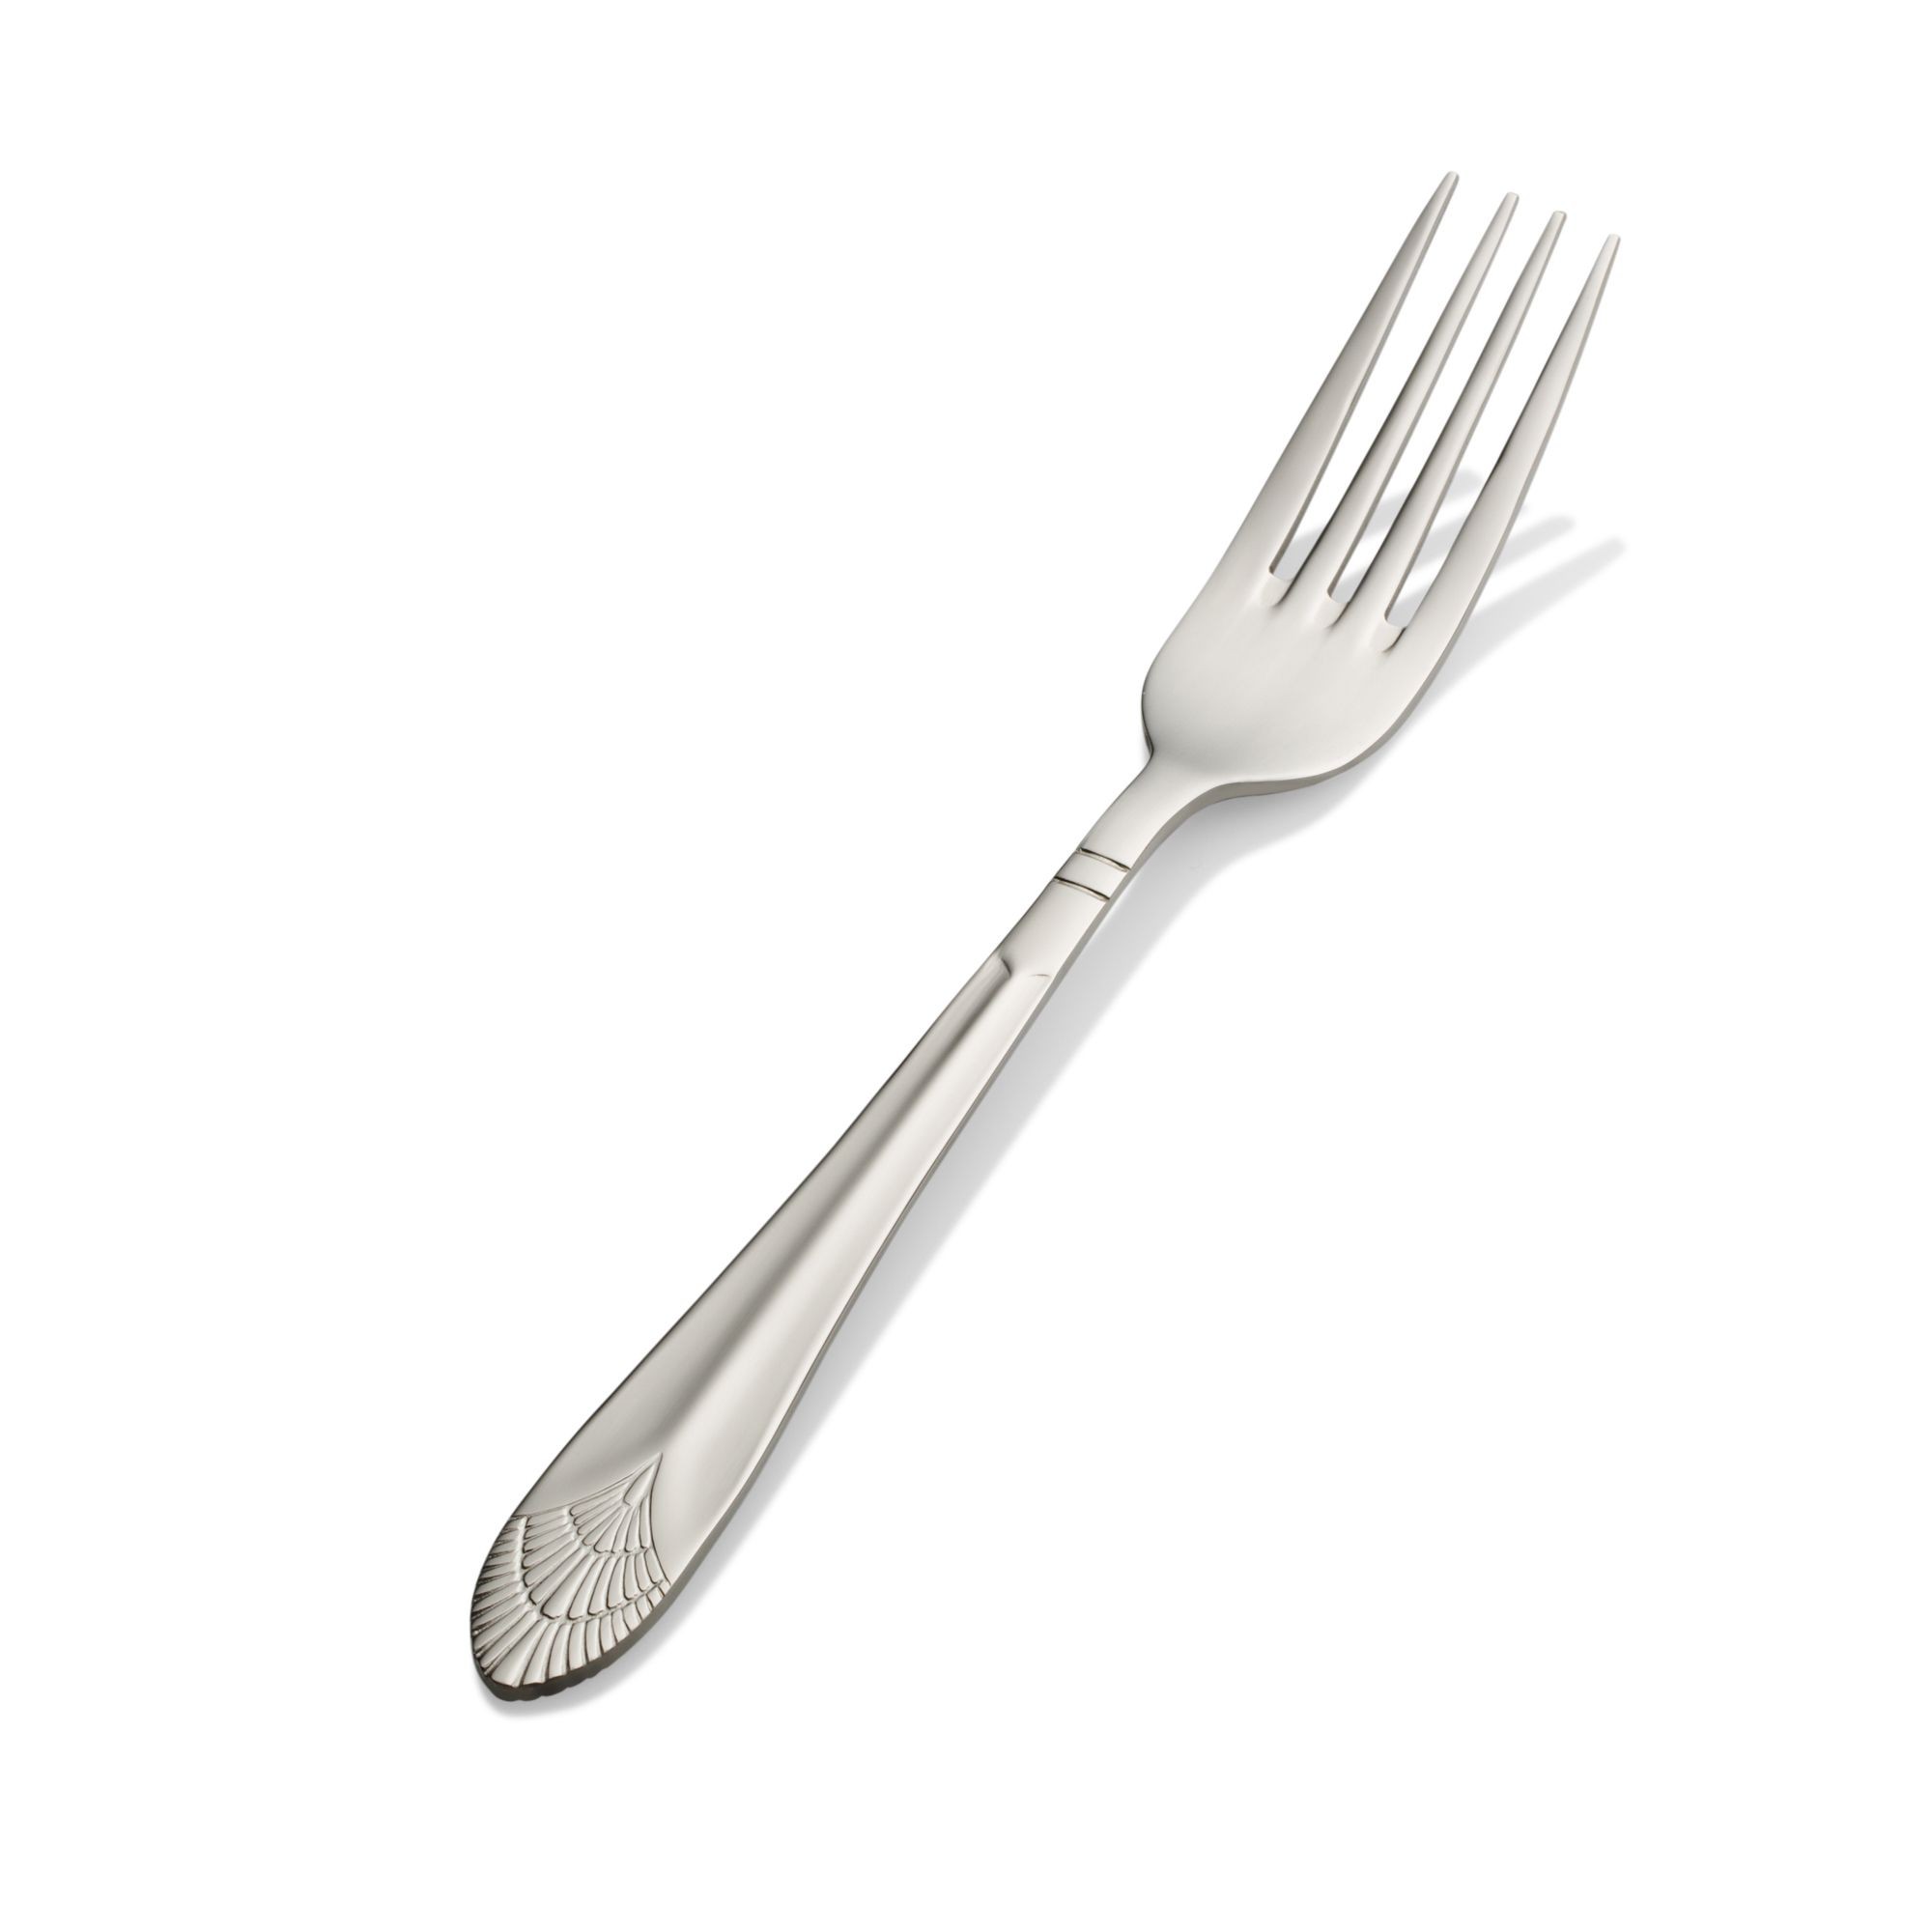 Bon Chef S1705 Nile 18/8 Stainless Steel Regular Dinner Fork